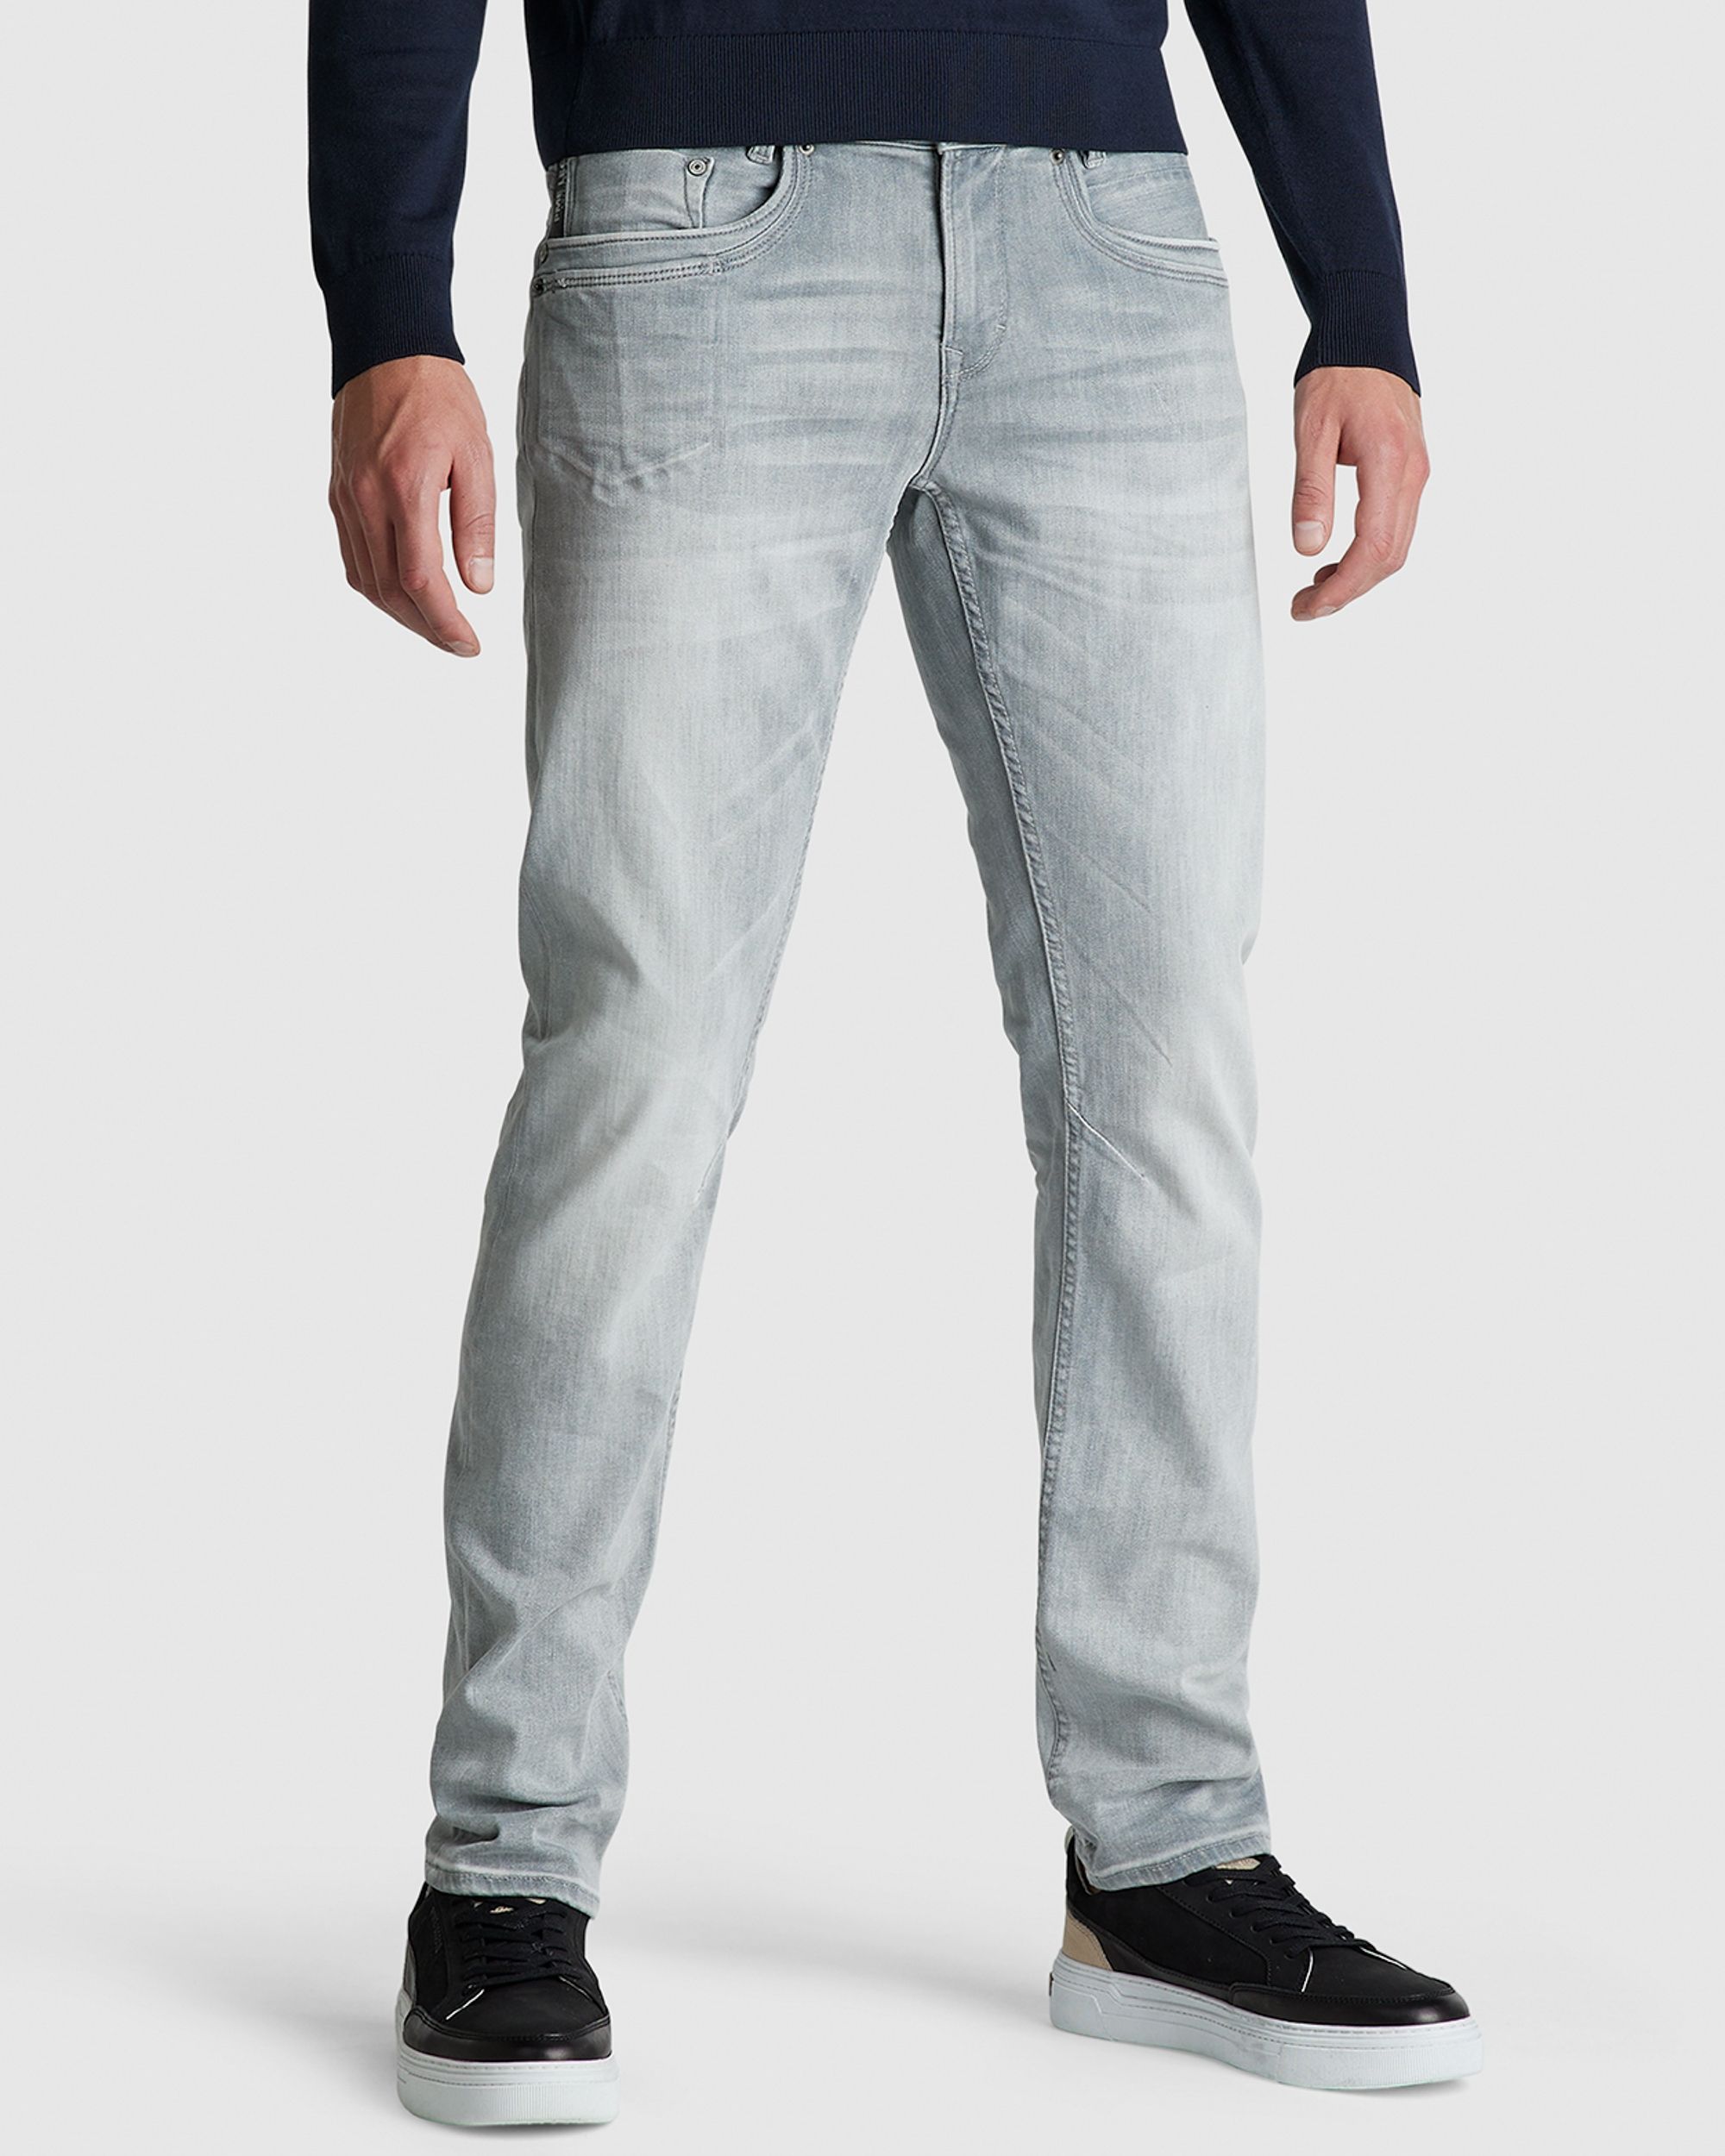 PME Legend Skymaster Jeans | Shop nu - Only for Men